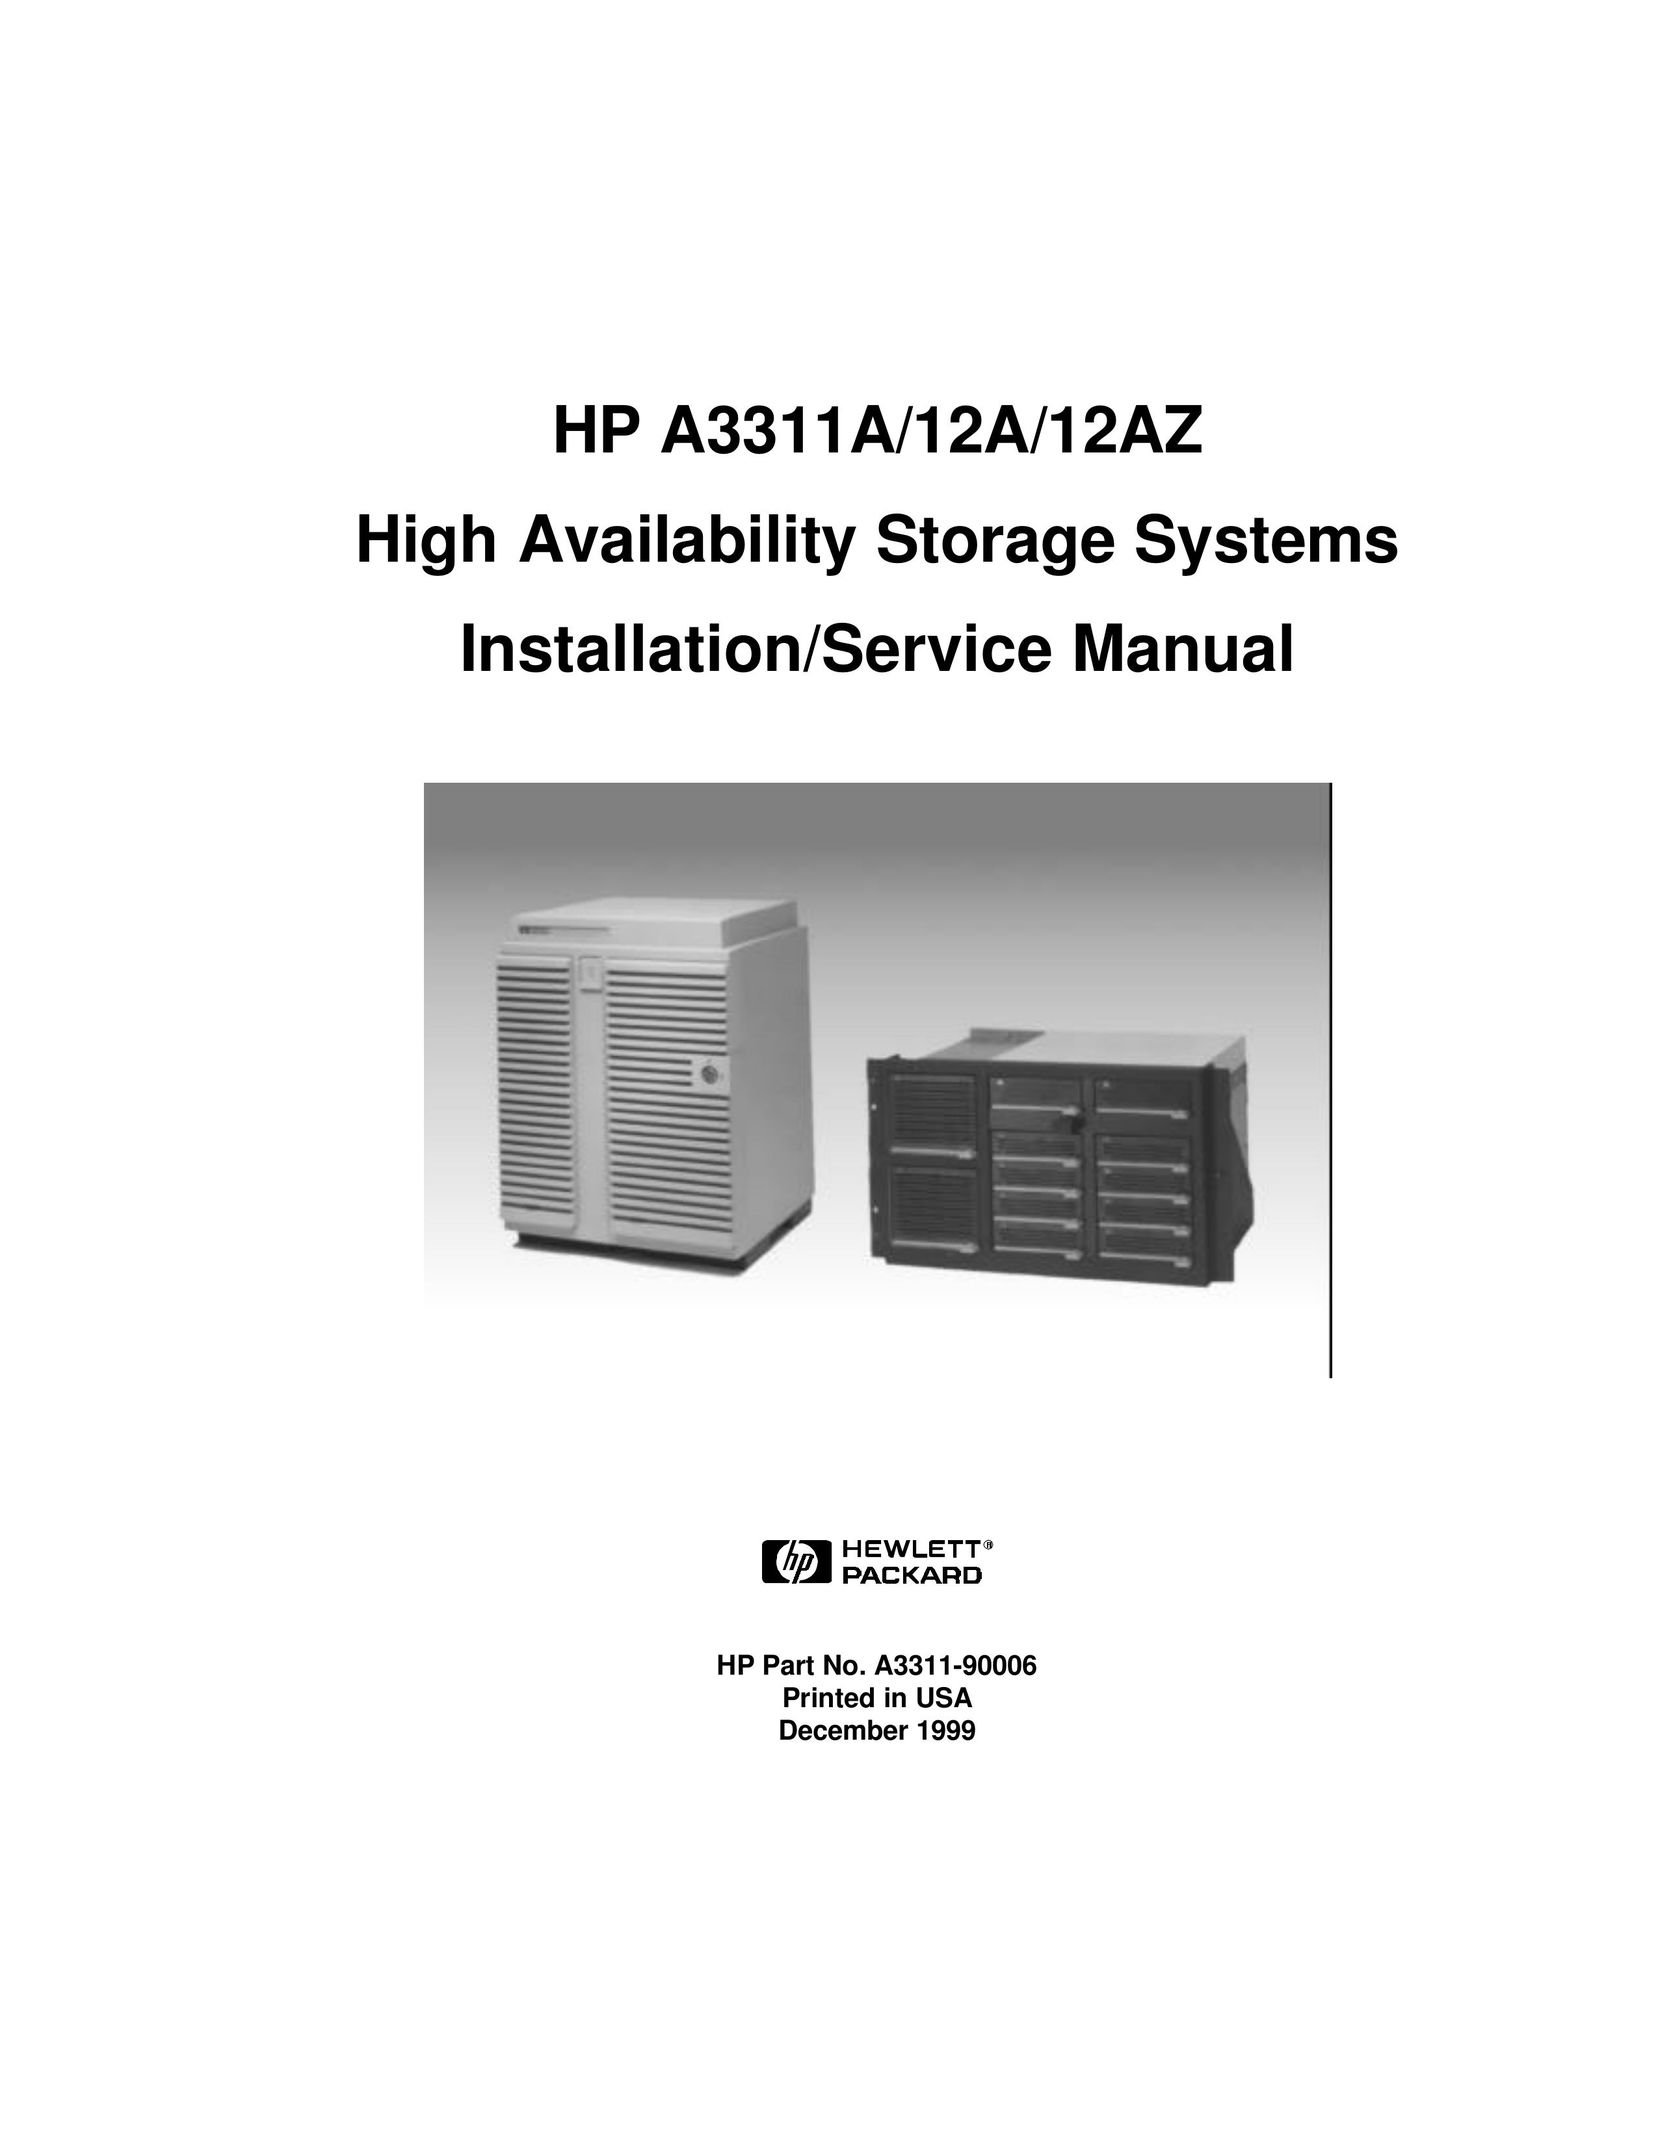 HP (Hewlett-Packard) A3312AZ Tool Storage User Manual